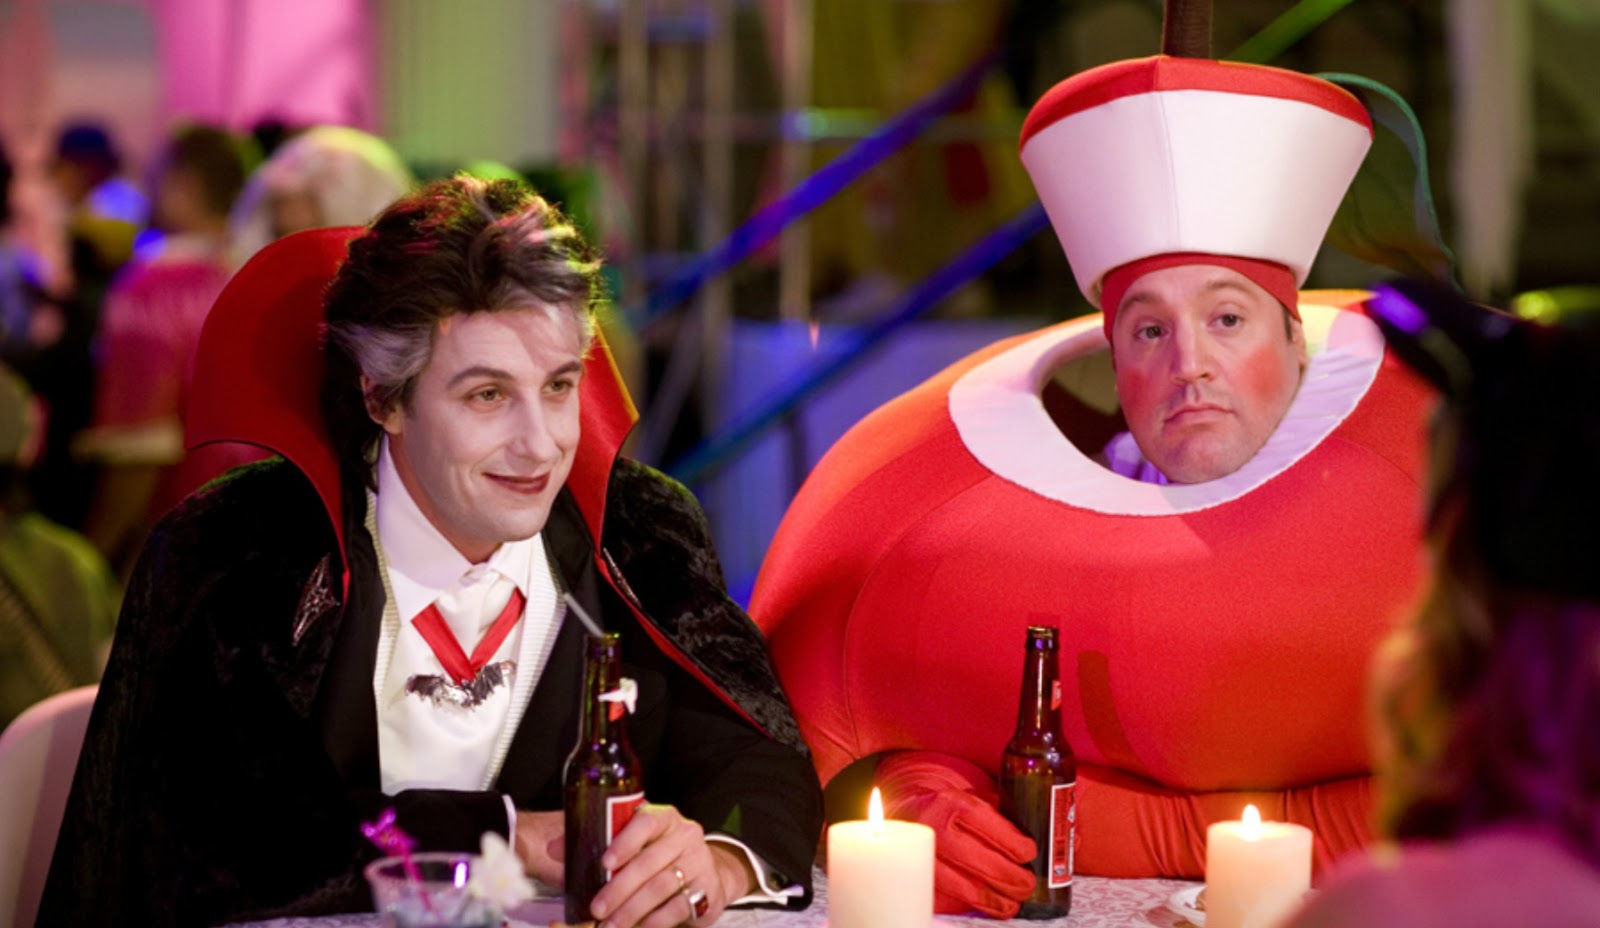 O Halloween do Hubie': Comédia de Adam Sandler é um dos filmes